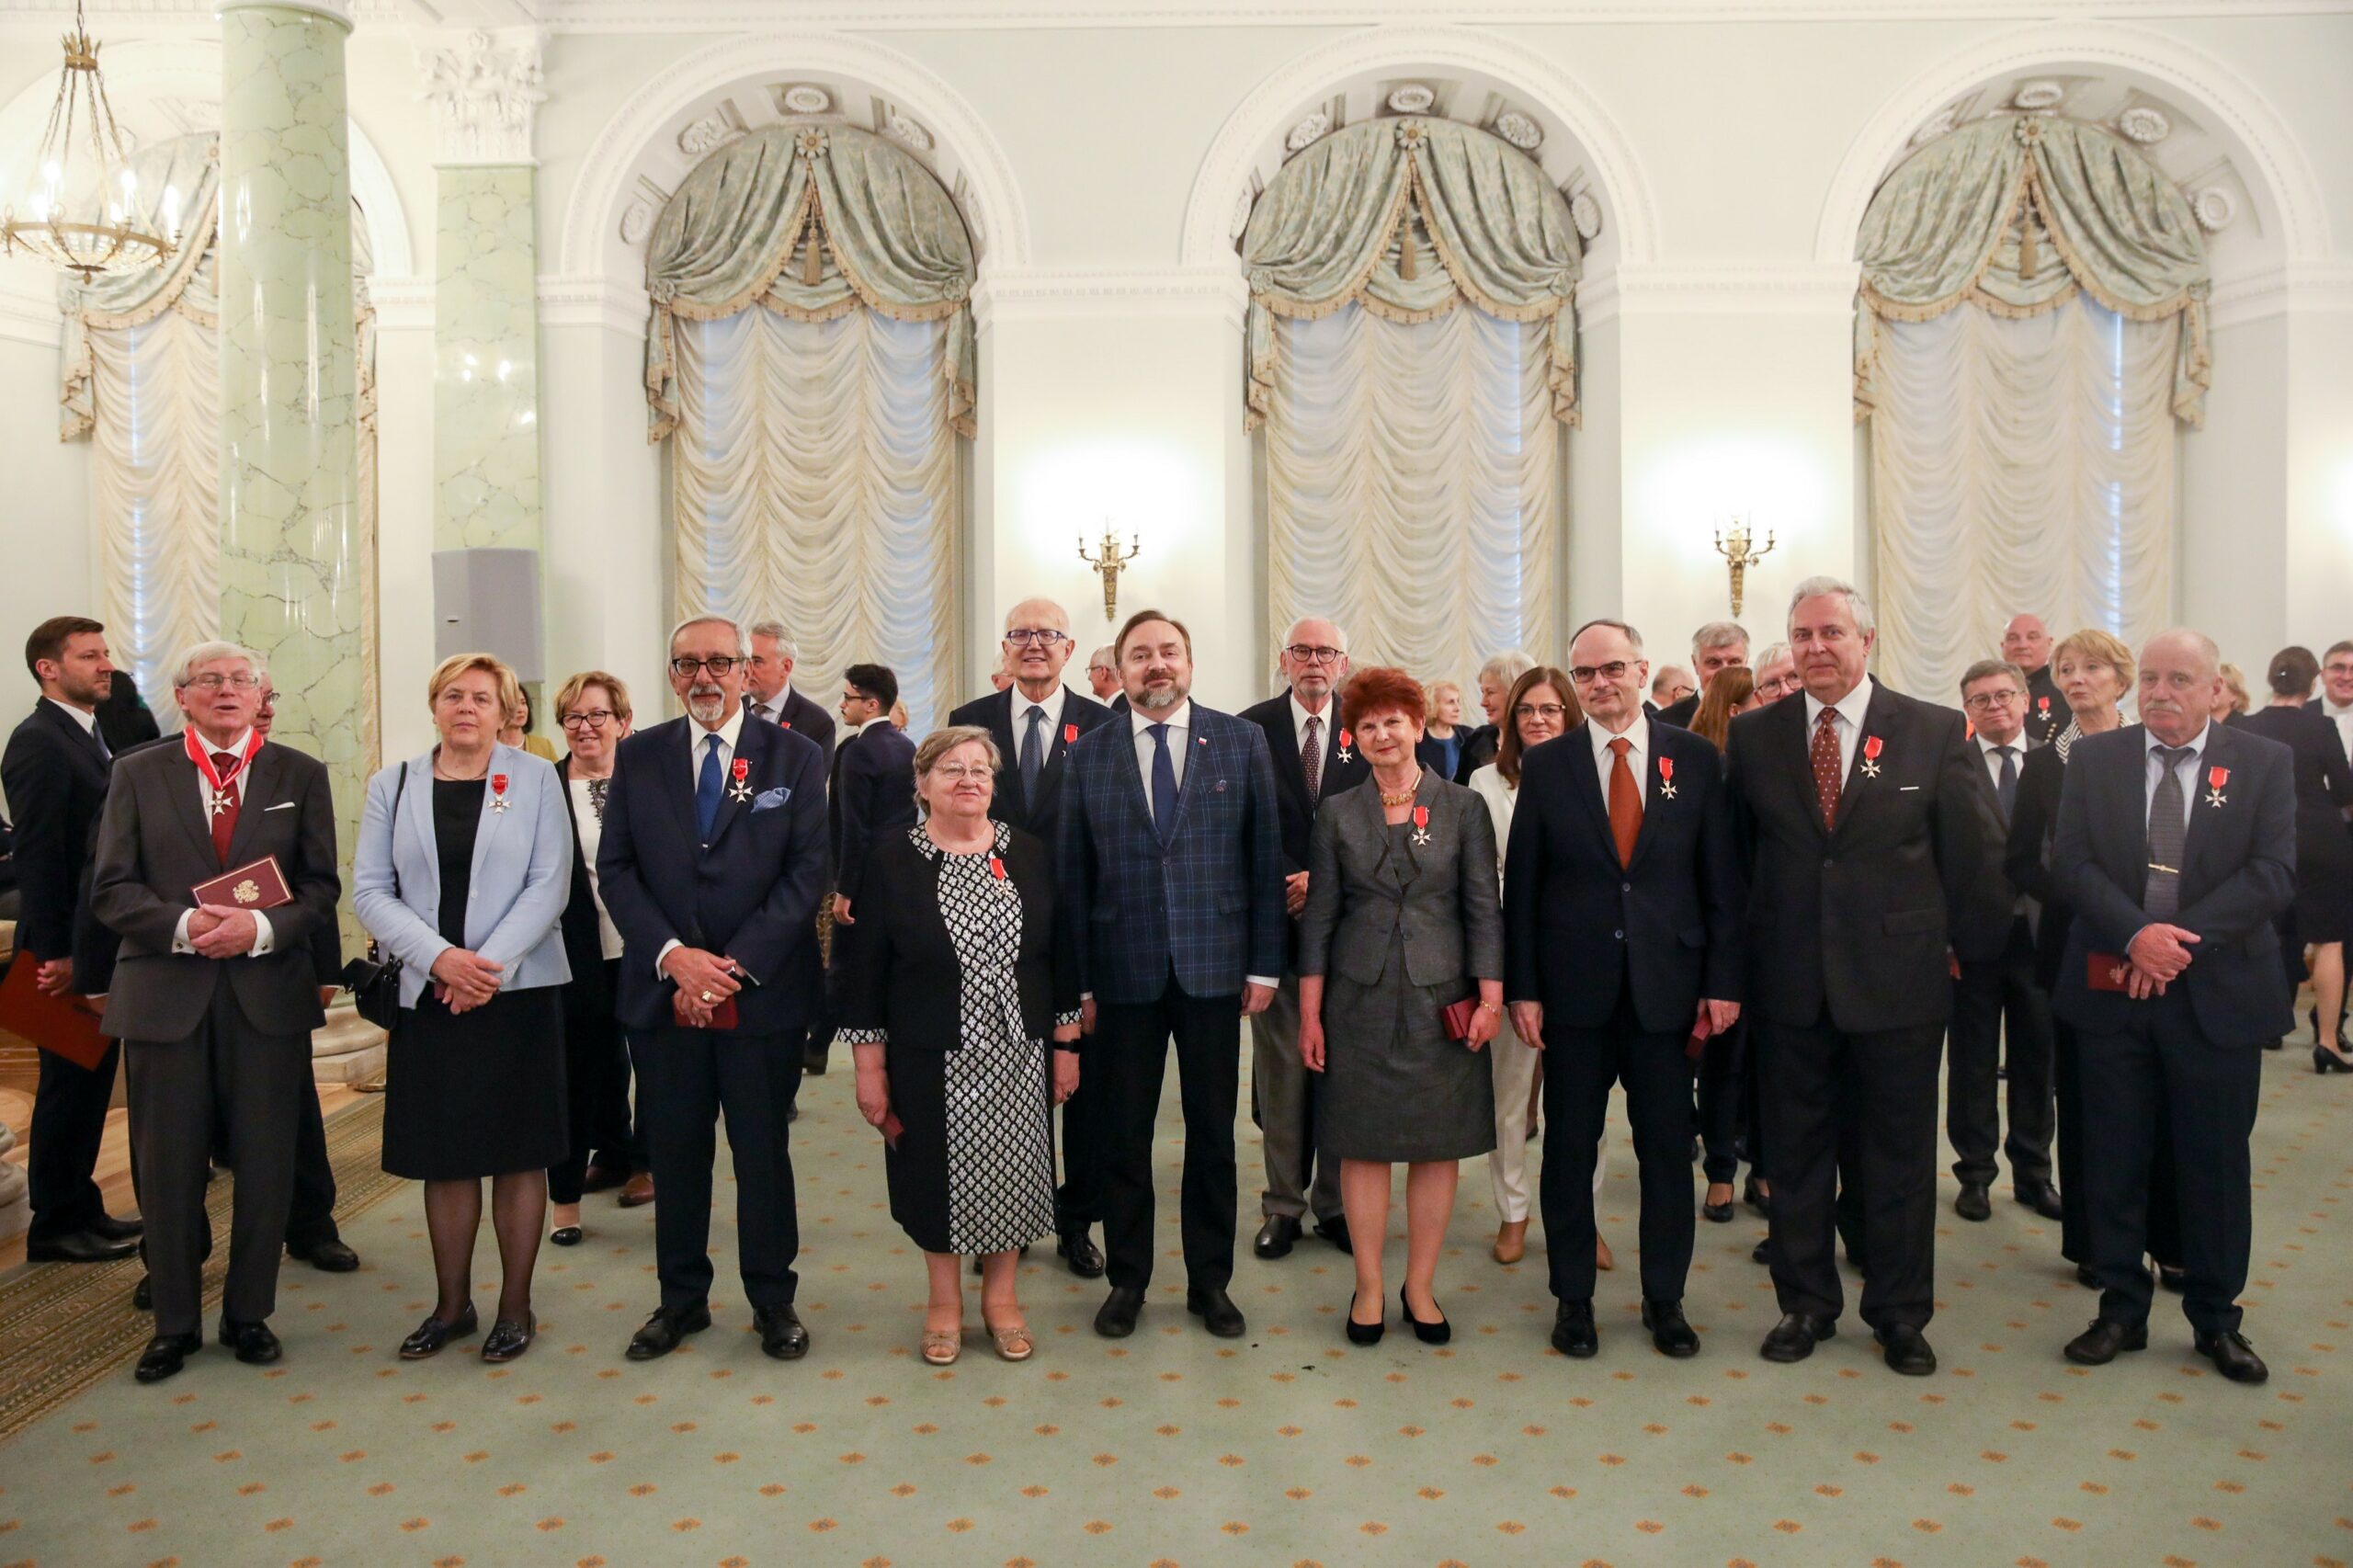 Na zdjęciu widzimy wszystkich odznaczonych stojących w Sali Pałacu Prezydenckiego